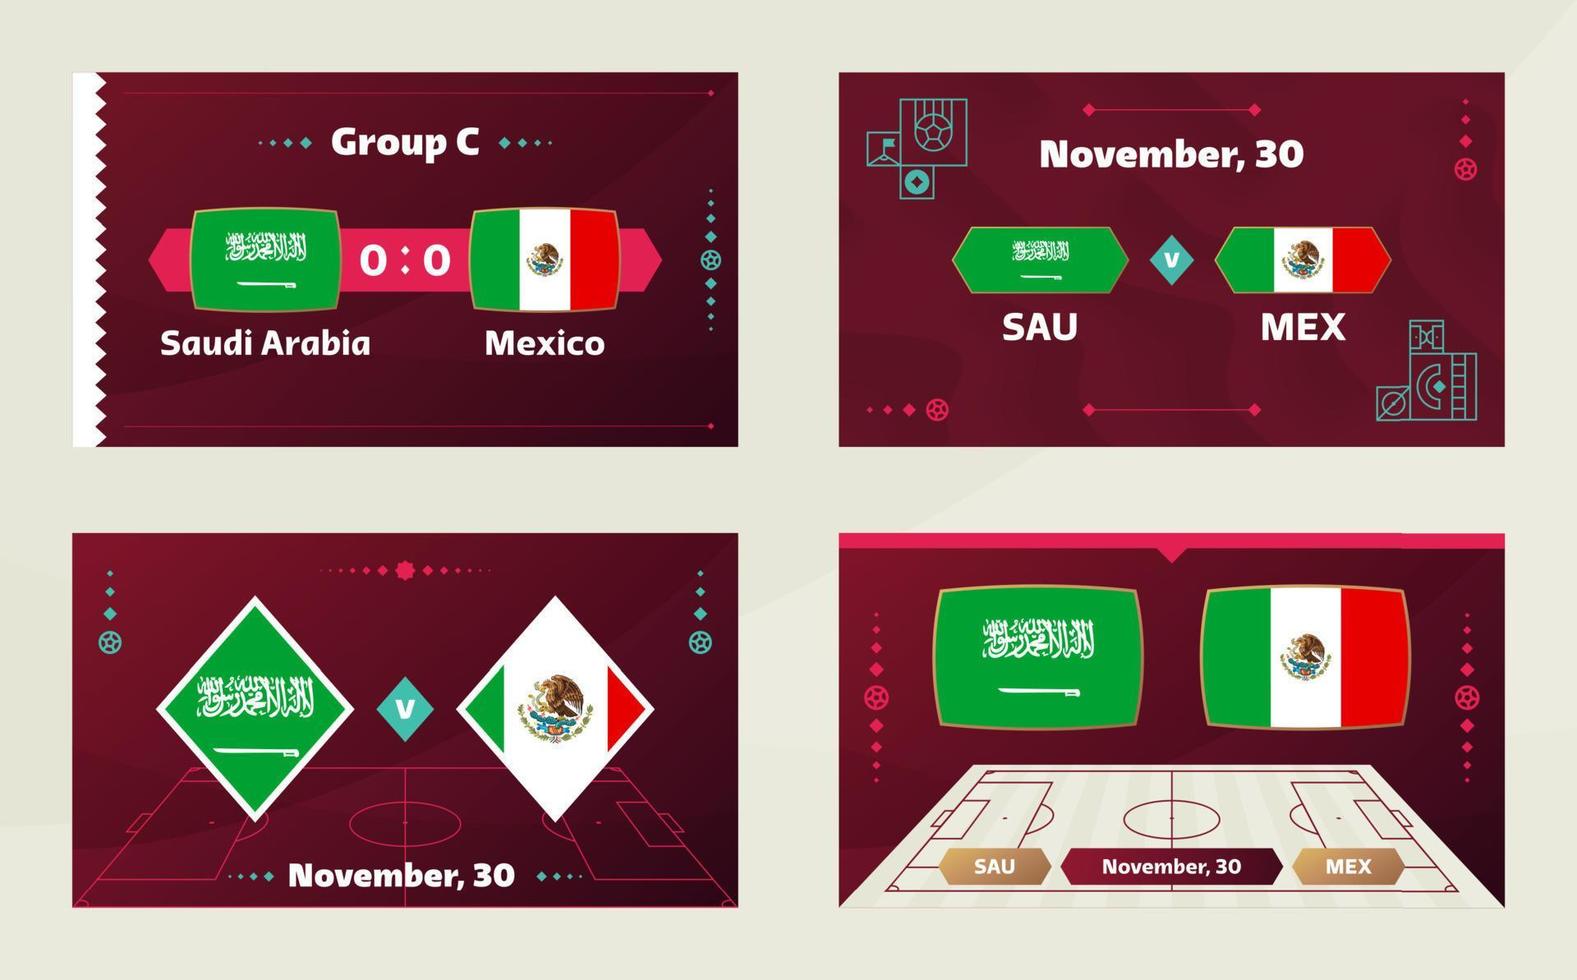 saoedi-arabië vs mexico, voetbal 2022, groep c. wereldkampioenschap voetbal competitie wedstrijd versus teams intro sport achtergrond, kampioenschap competitie finale poster, vectorillustratie. vector